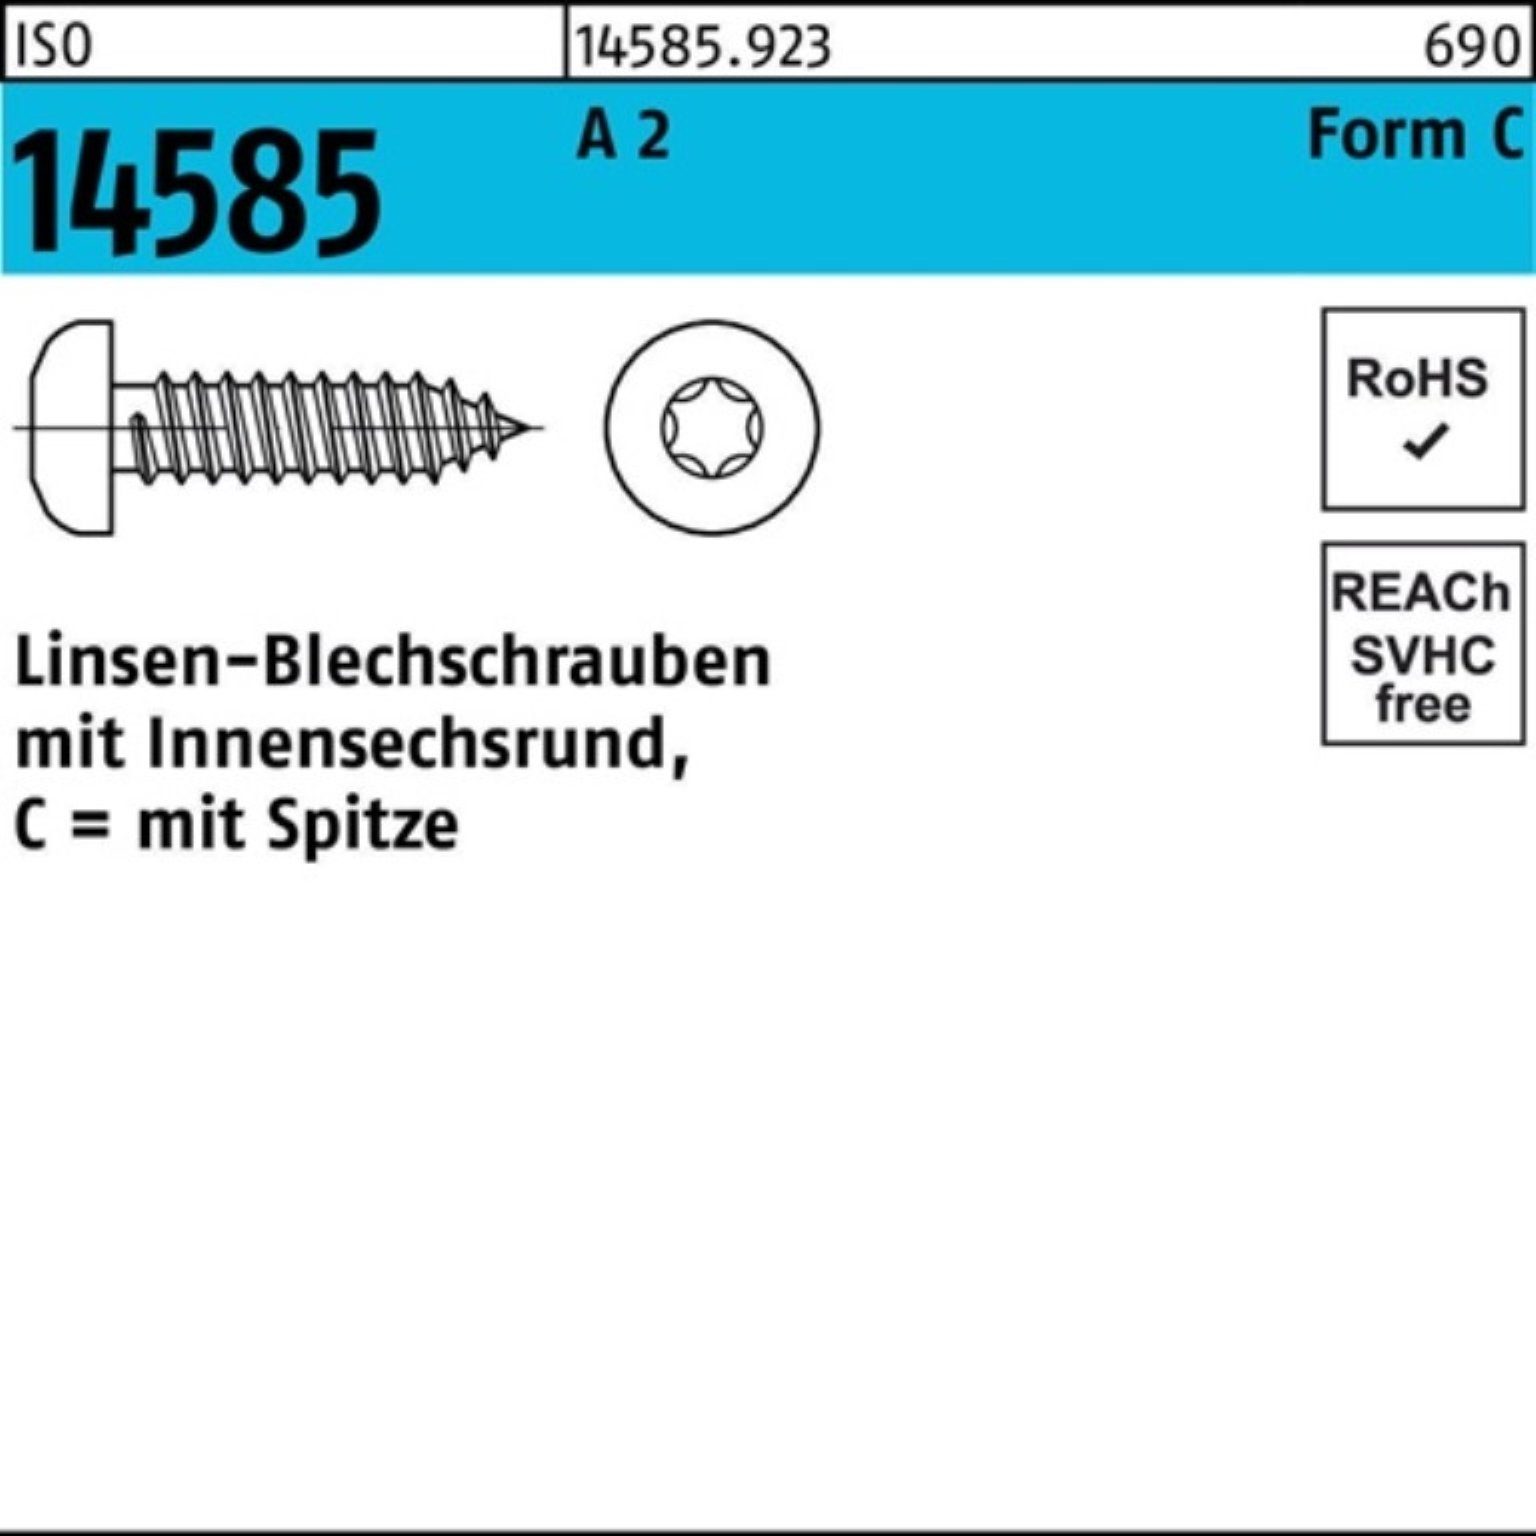 Linsenblechschraube 250 -C T30 Pack 50 250er 6,3x ISR 14585 St 2 Blechschraube A Reyher ISO